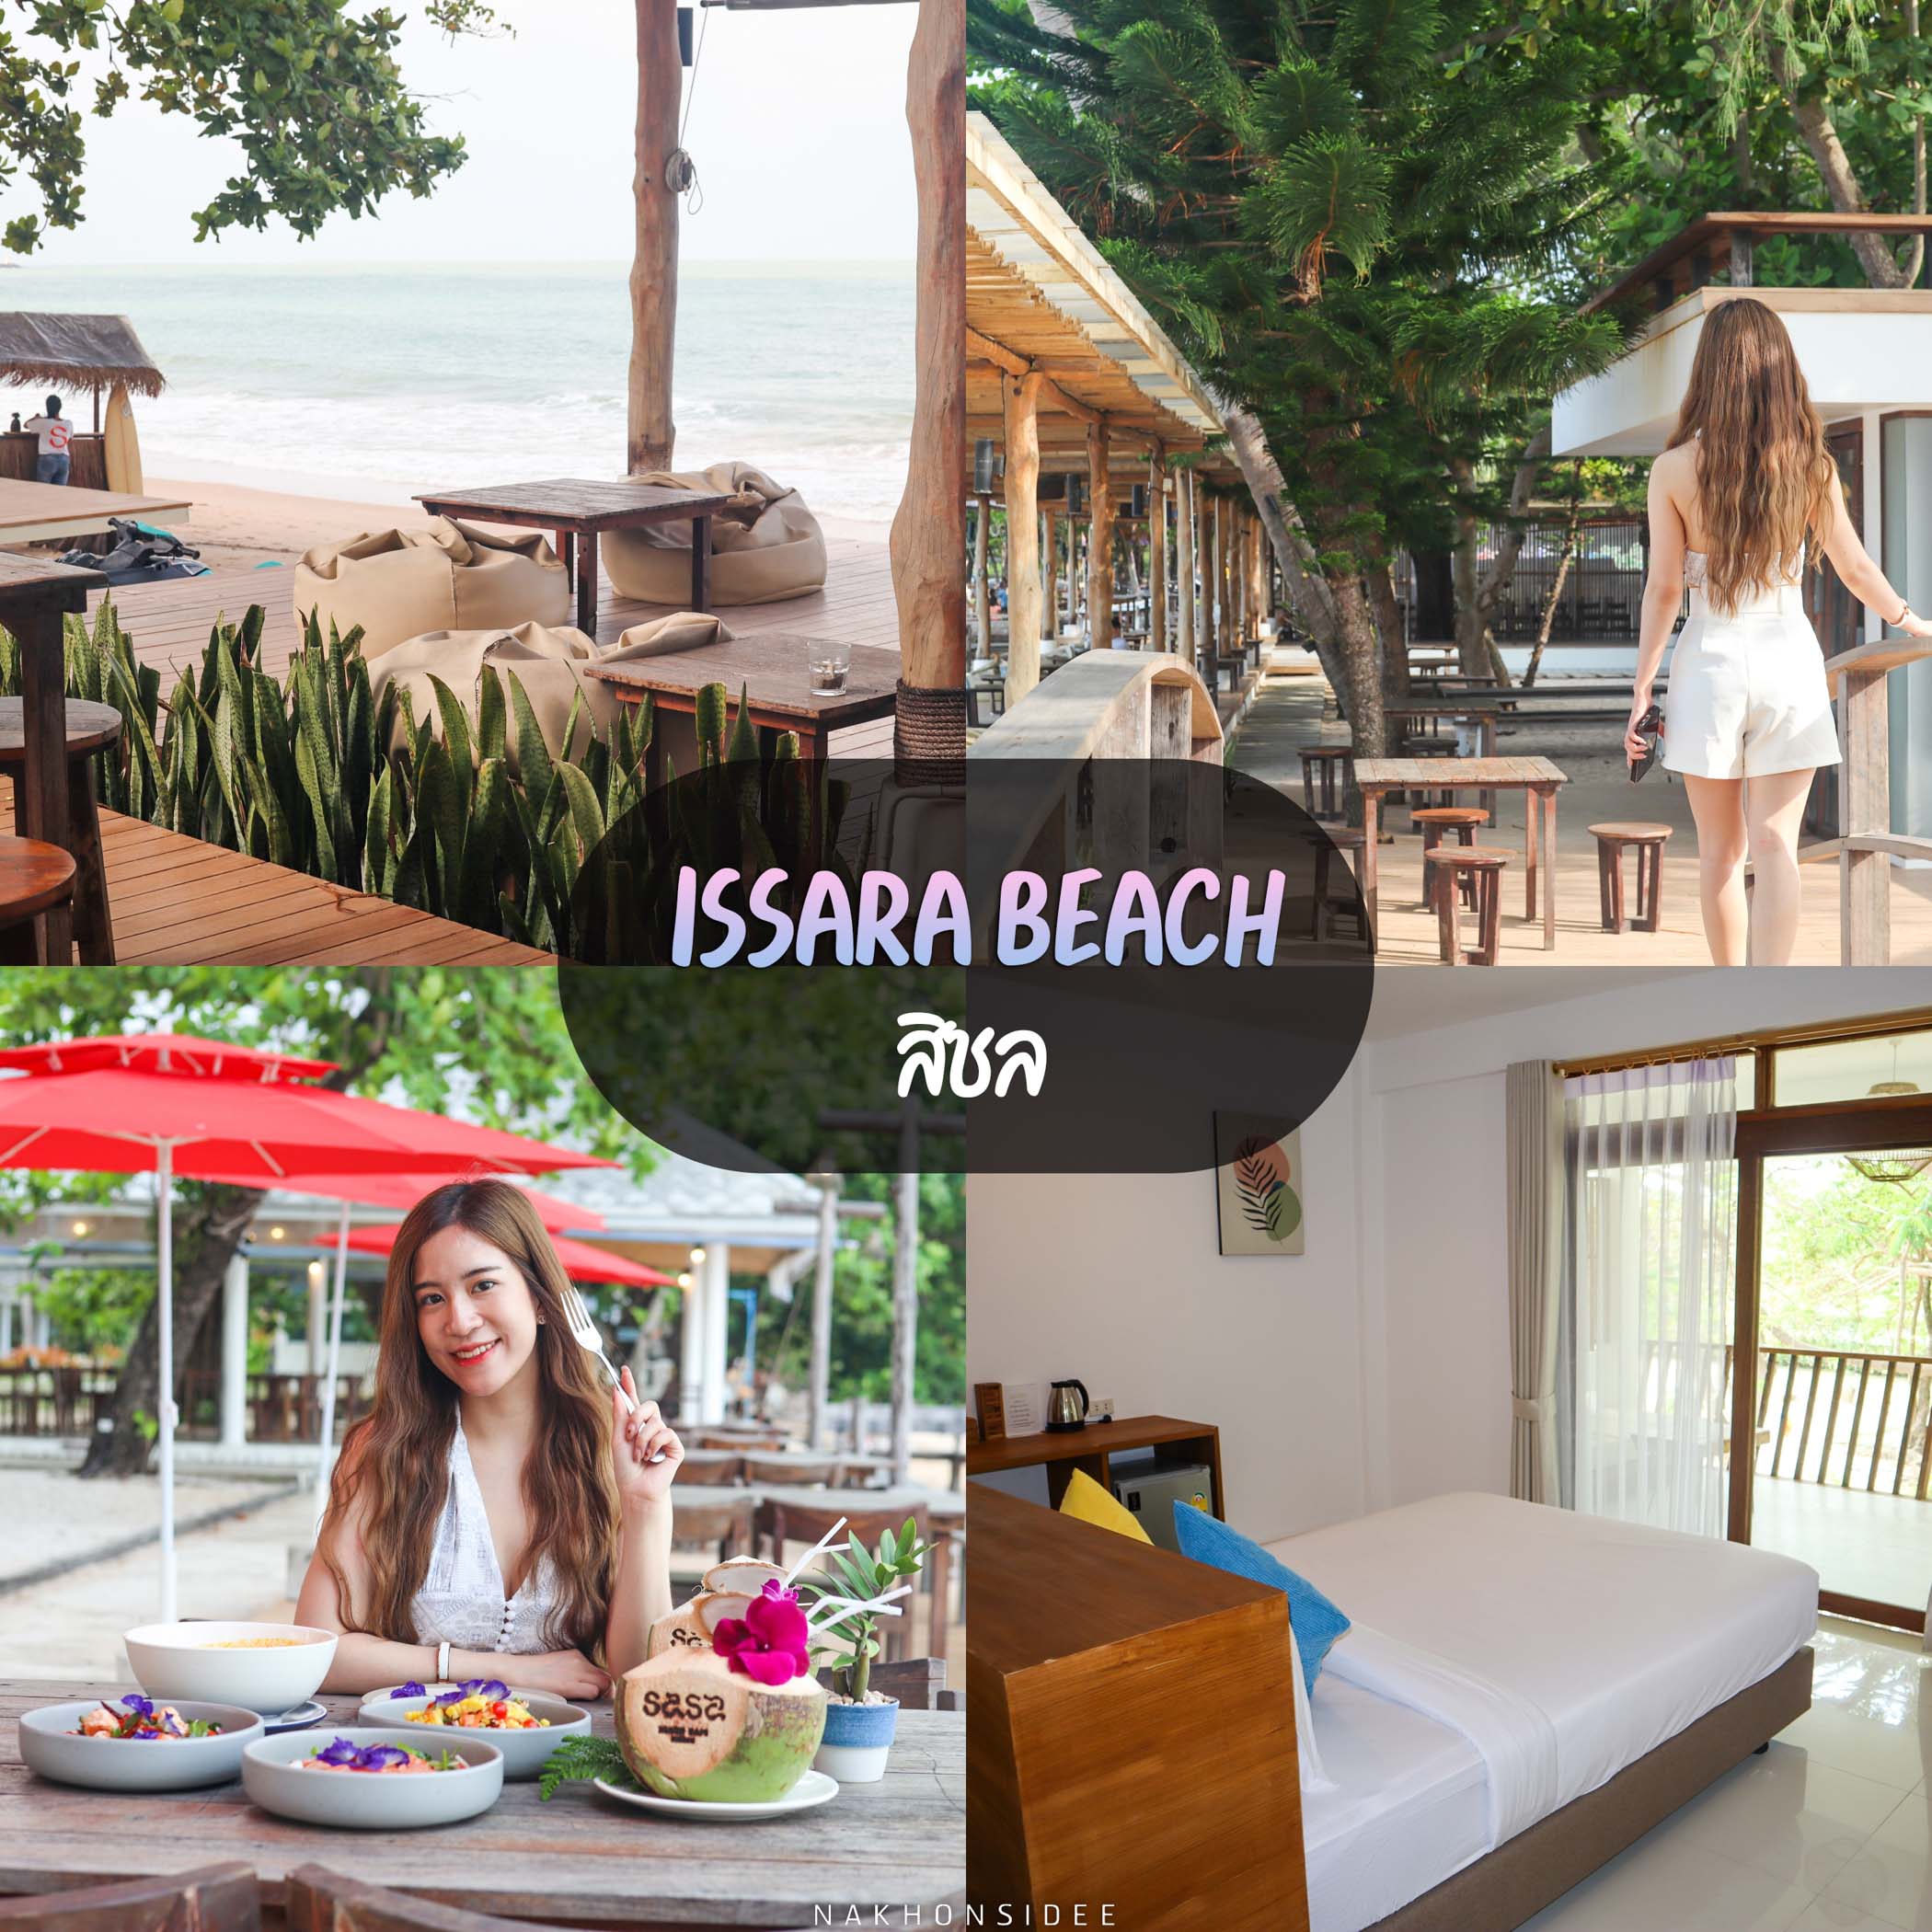 Issara-Beach-Resort--สิชล อิสระ-บีช-รีสอร์ท-มาที่นี่ถือว่าได้เที่ยวครบเลย-มีทั้งรีสอร์ท-ที่พัก-คาเฟ่-ร้านอาหาร-บอกเลยว่าครบบ-มาสิชลขนอมต้องเช็คอินที่นี่เลย สิชล,ขนอม,ที่พัก,ของกิน,โรงแรม,ที่เที่ยว,จุดเช็คอิน,วัดเจดีย์,ตาไข่